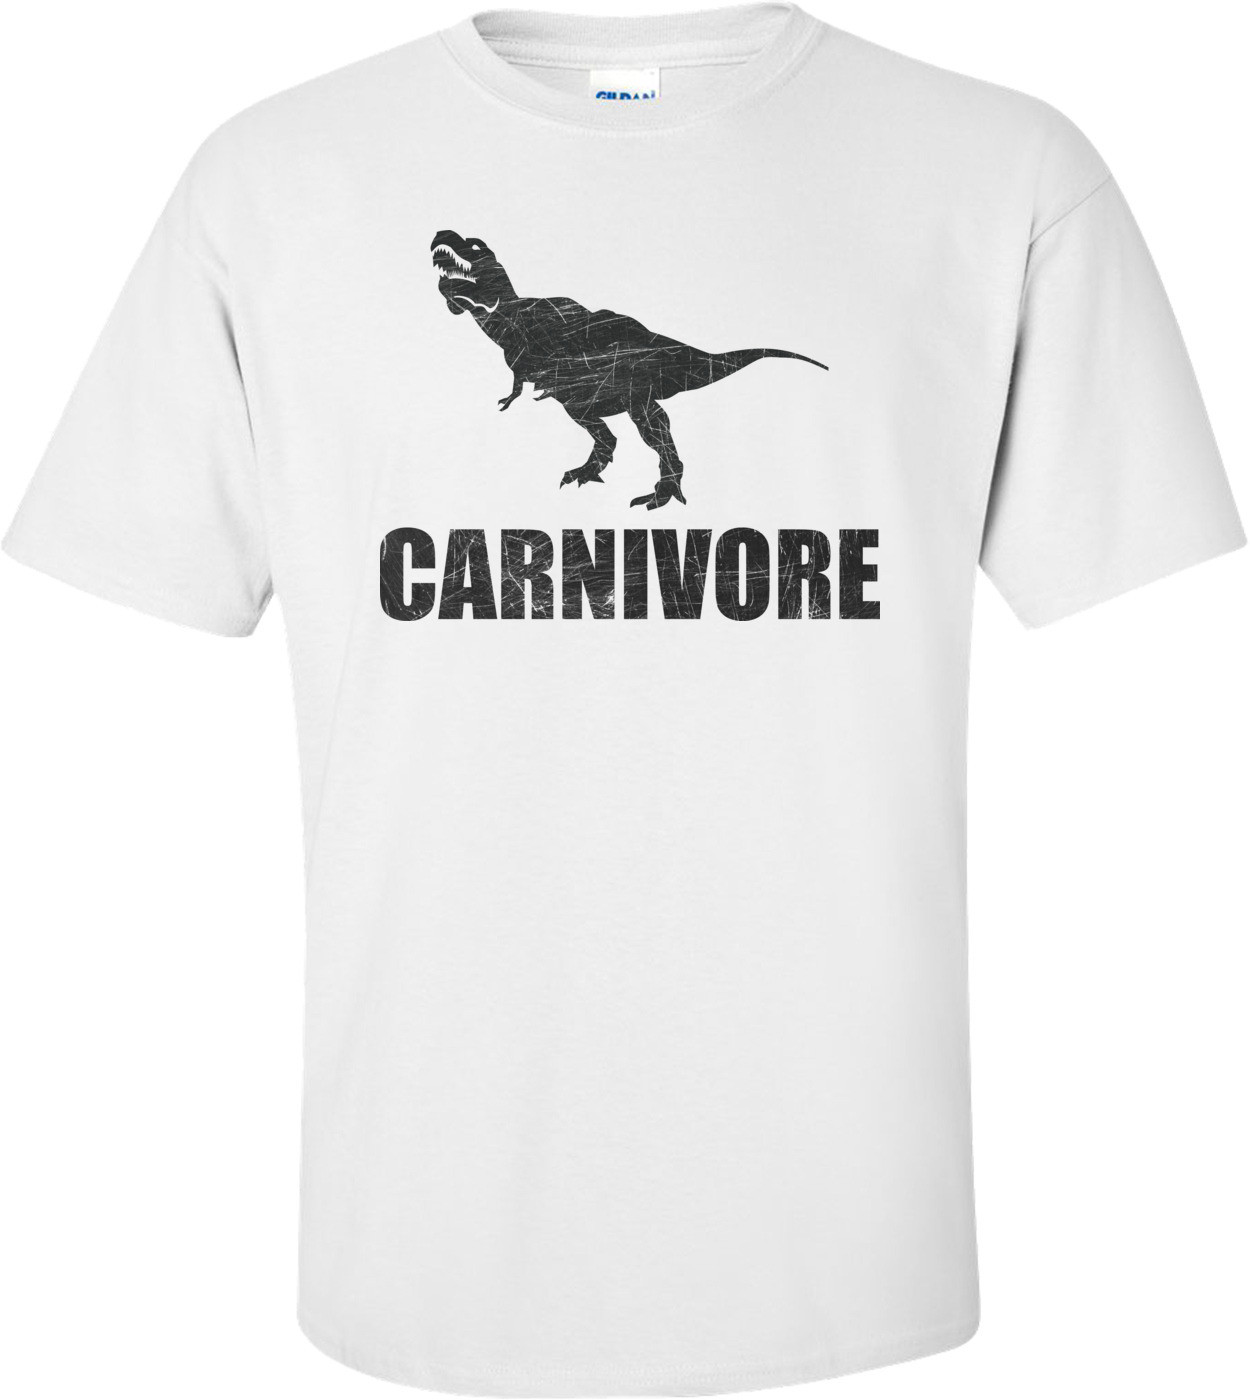 Carnivore Dinosaur T-shirt